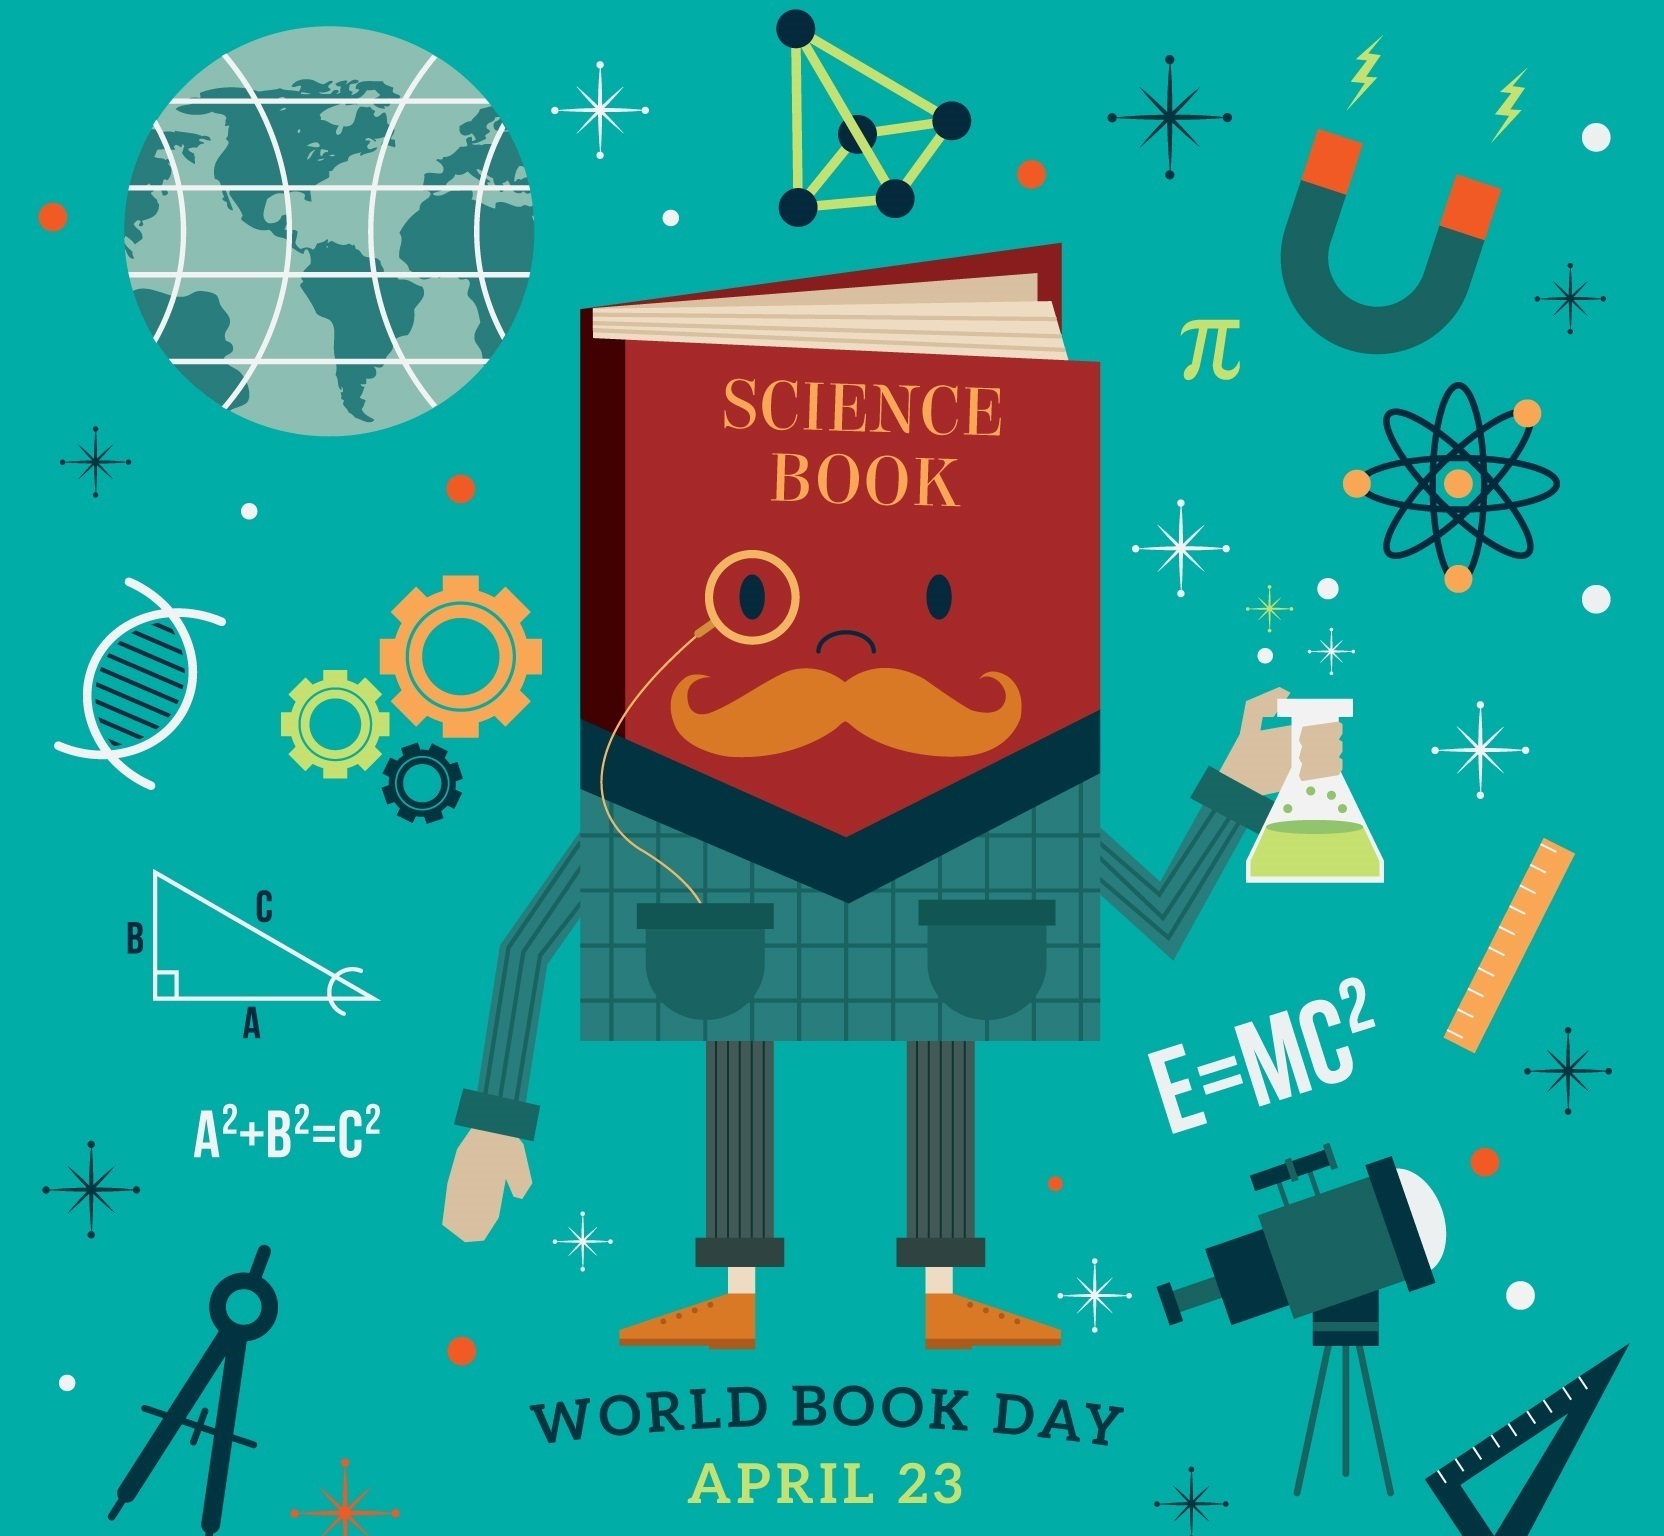 Cartel del Día mundial del libro, el 23 de abril, con la ilustración de un libro de ciencia personificado.